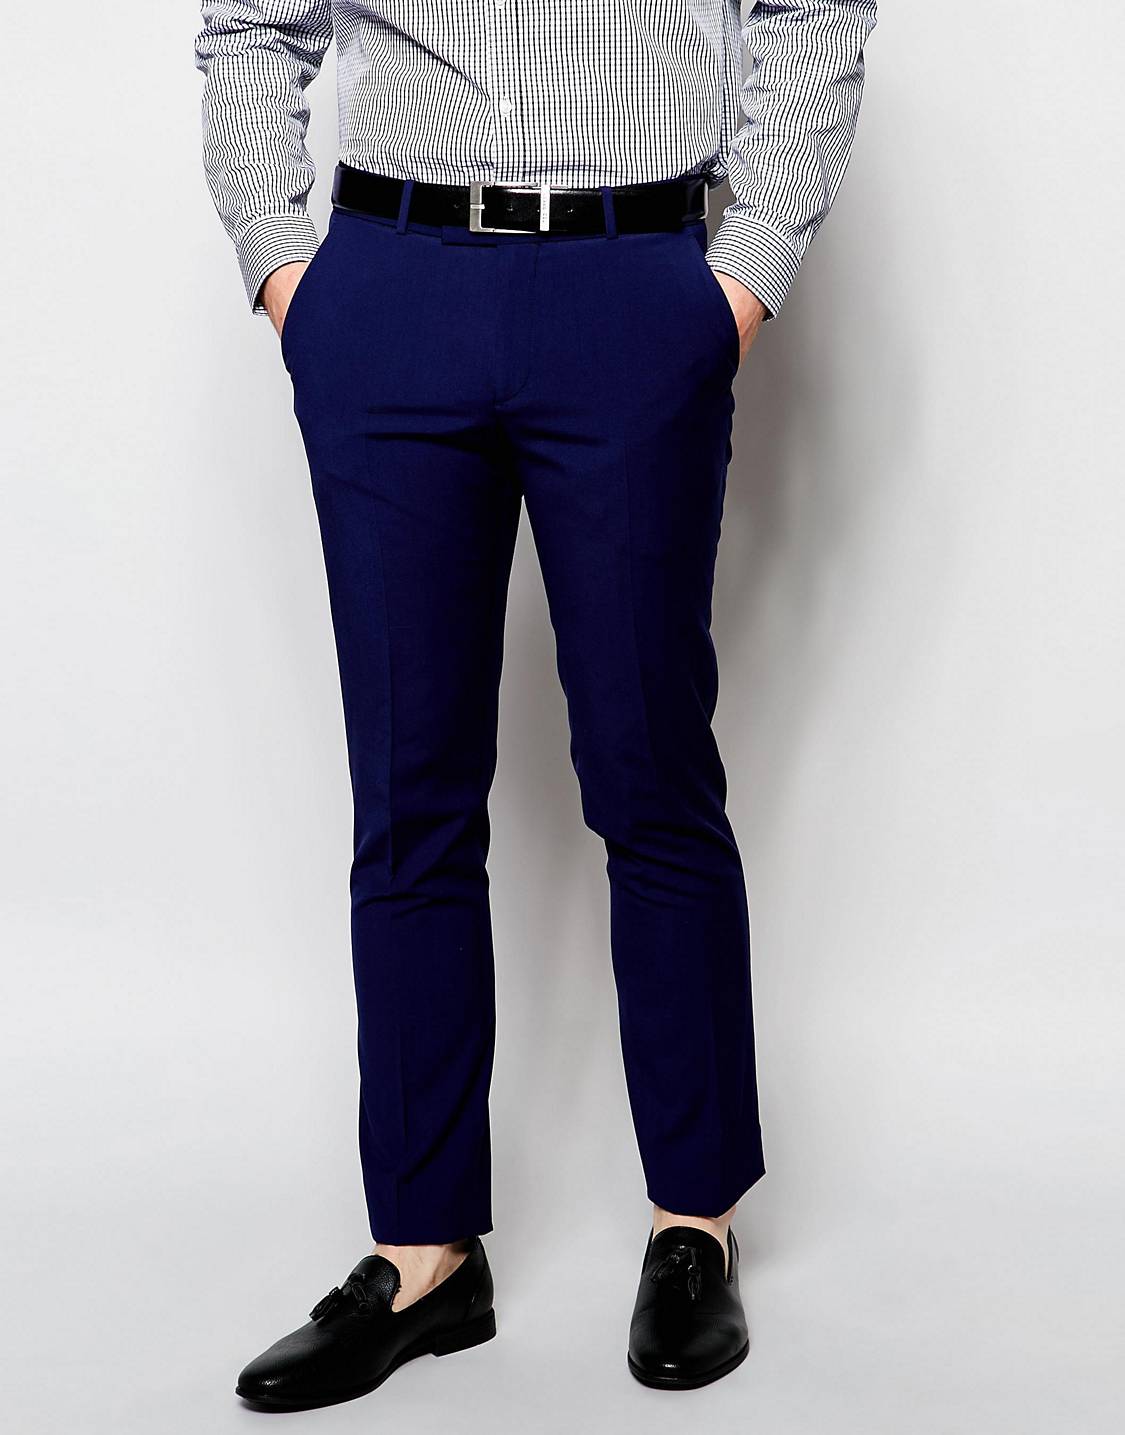 Темно синий штаны мужские. Ben Sherman штаны. Ben Sherman мужские штаны. Синие брюки мужские. Темно синие брюки мужские.